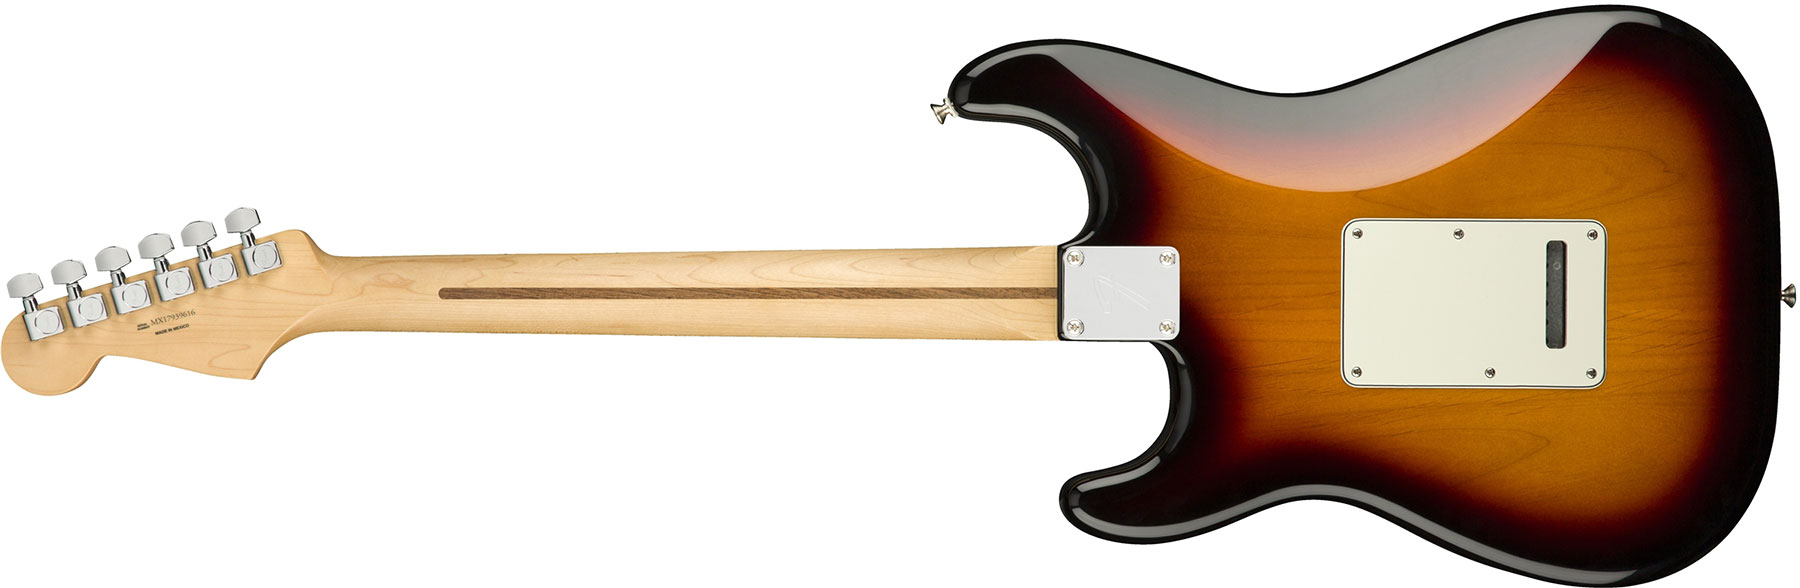 Fender Strat Player Mex Hss Mn - 3-color Sunburst - Str shape electric guitar - Variation 1